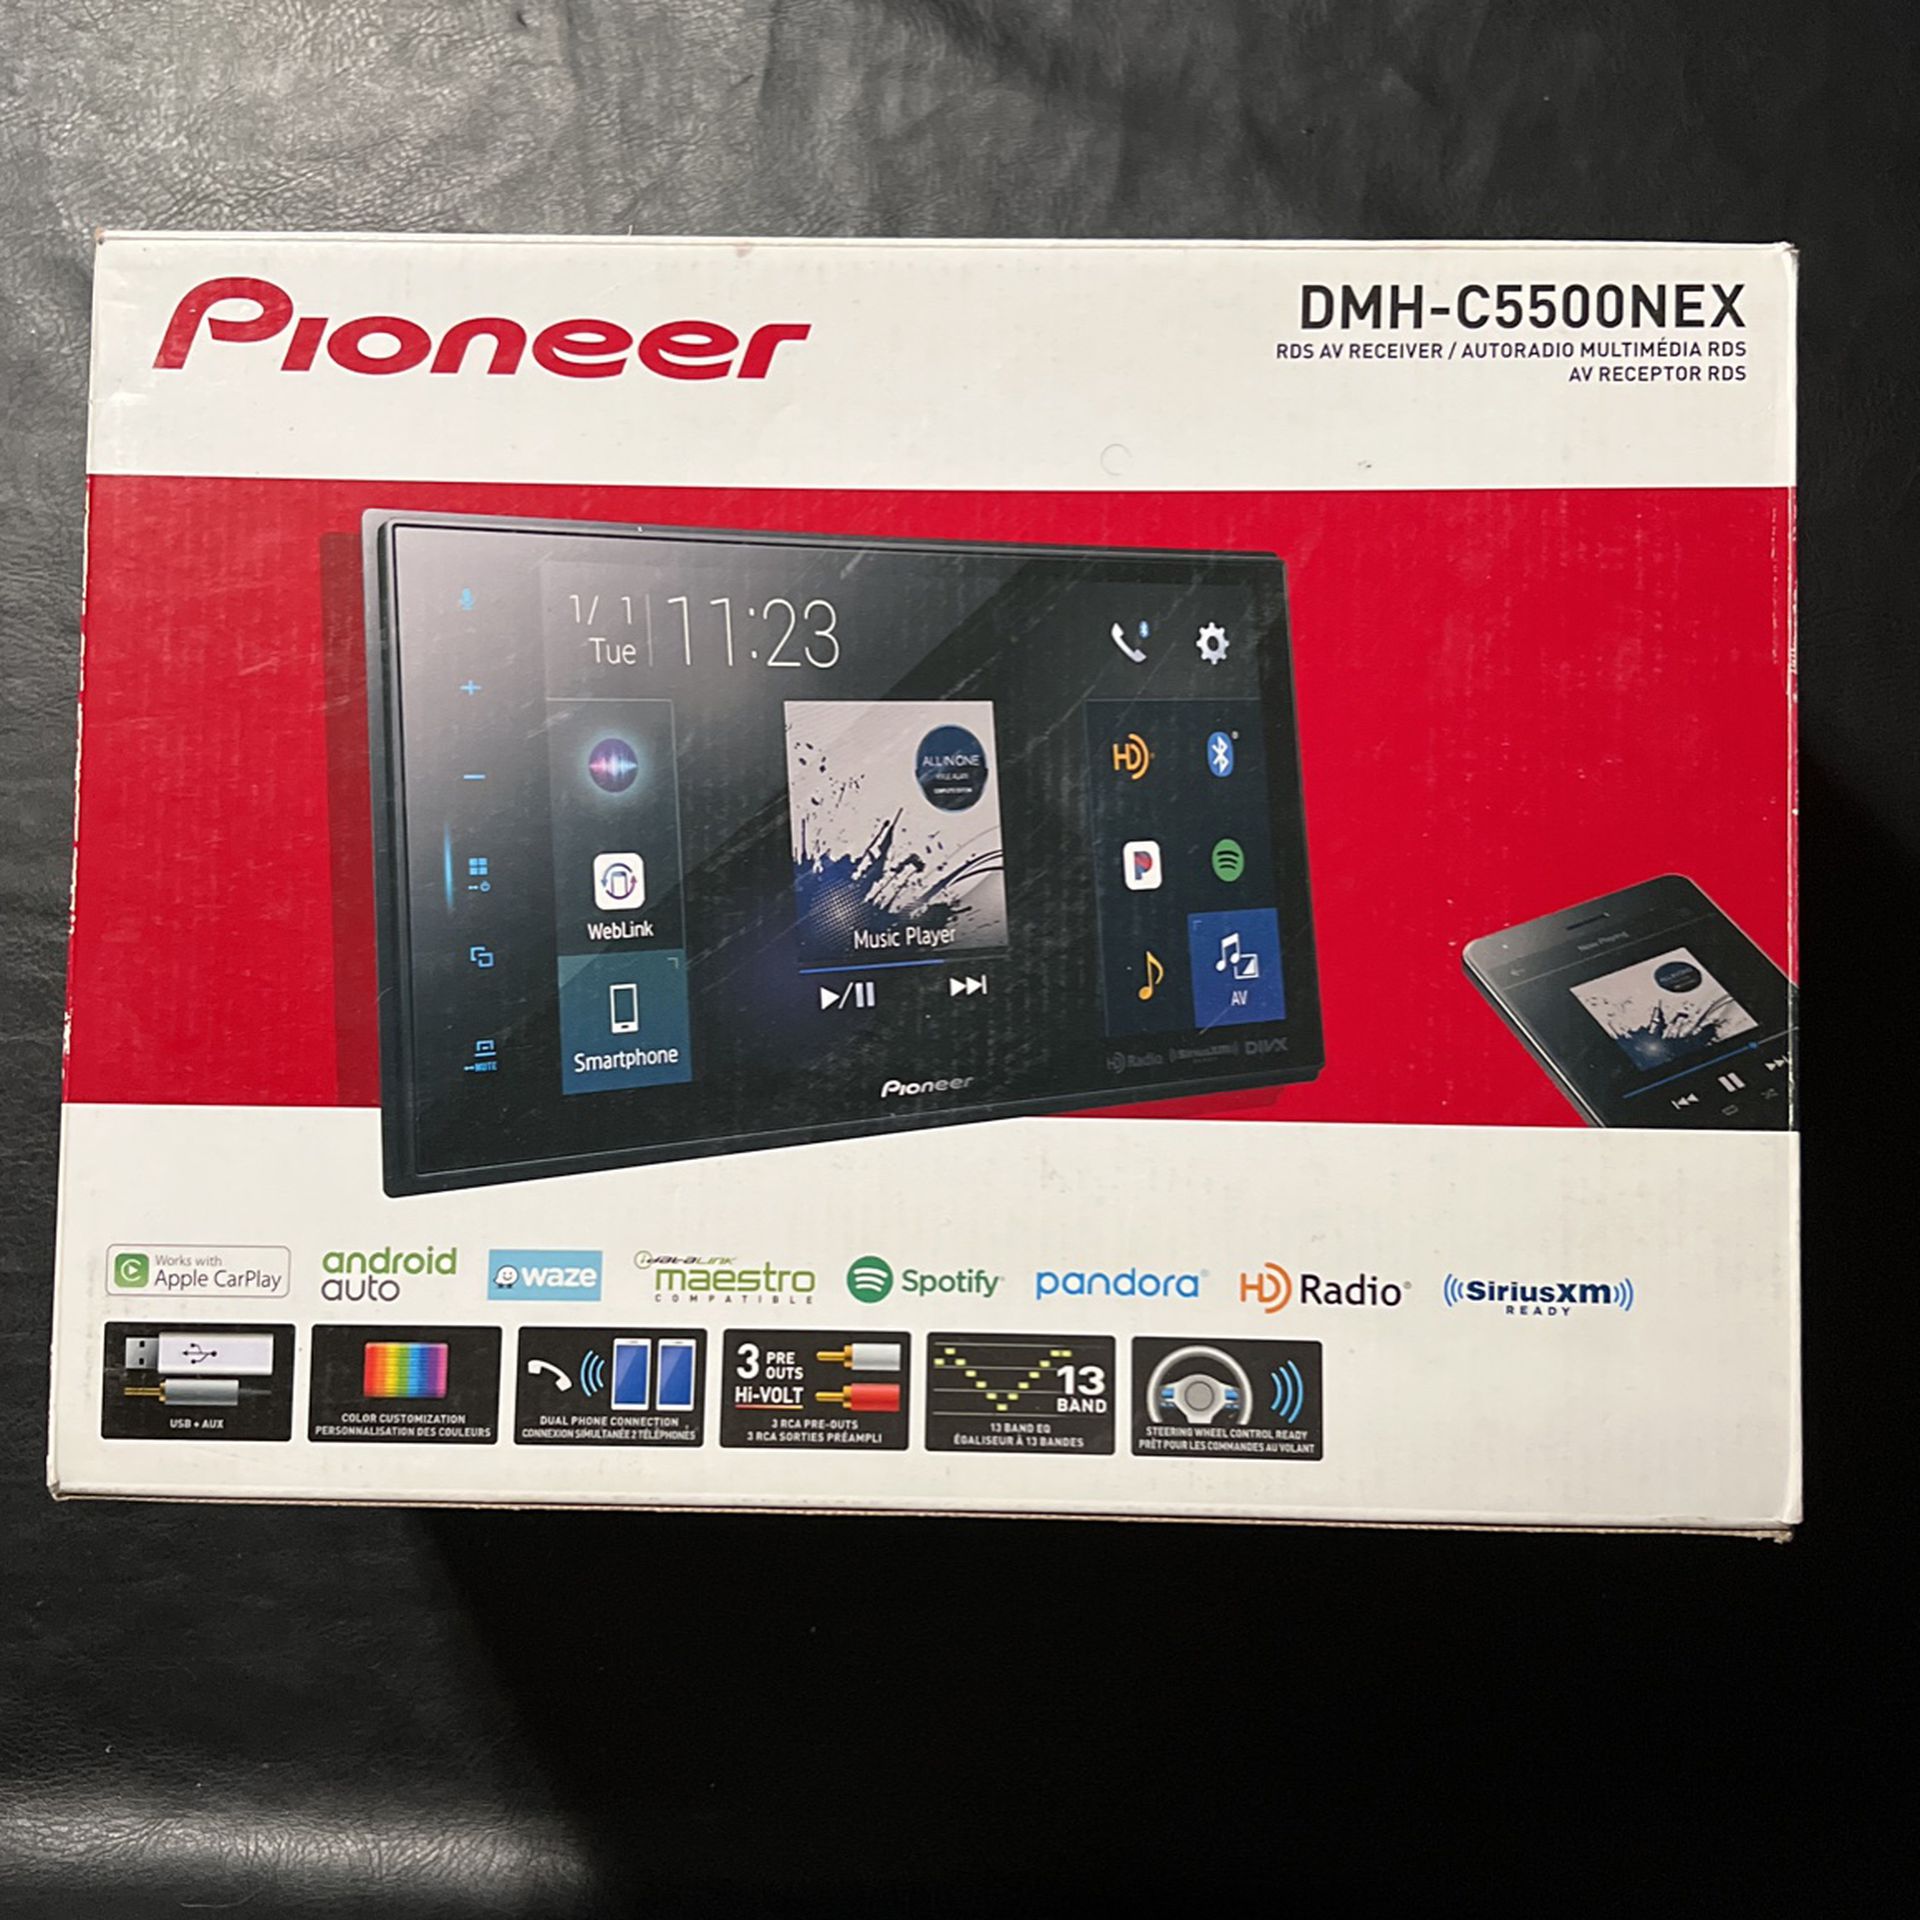 Used - Pioneer 8” Radio DMH-C5500NEX /pioneer-8-android-auto-apple-carplay-bluetooth-hd-radio-modular-s